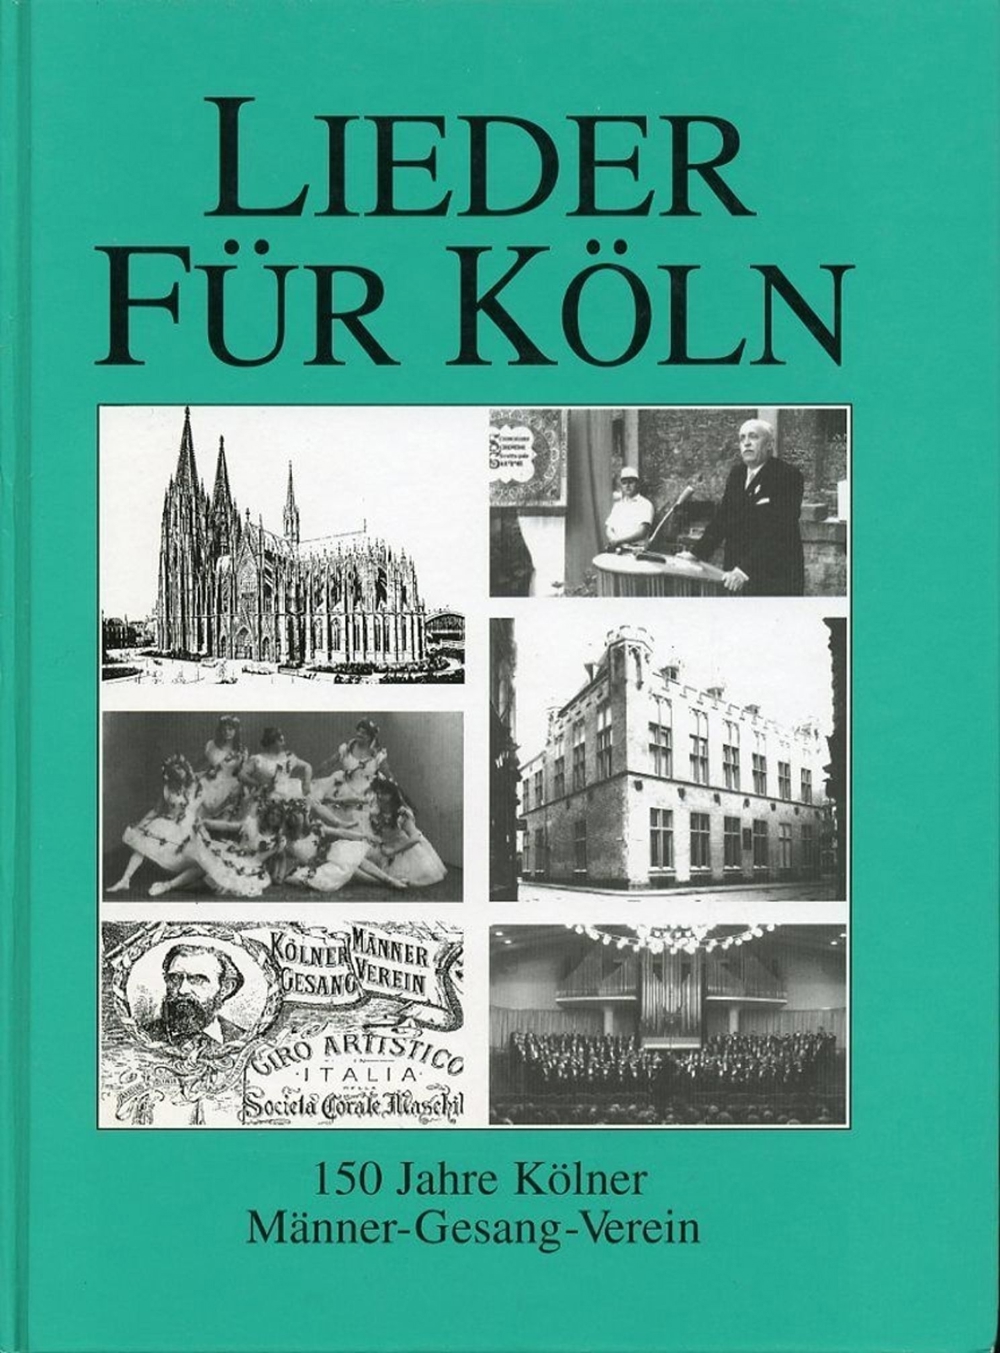 LIEDER FÜR KÖLN 150 Jahre Kölner Männer-Gesang-Verein